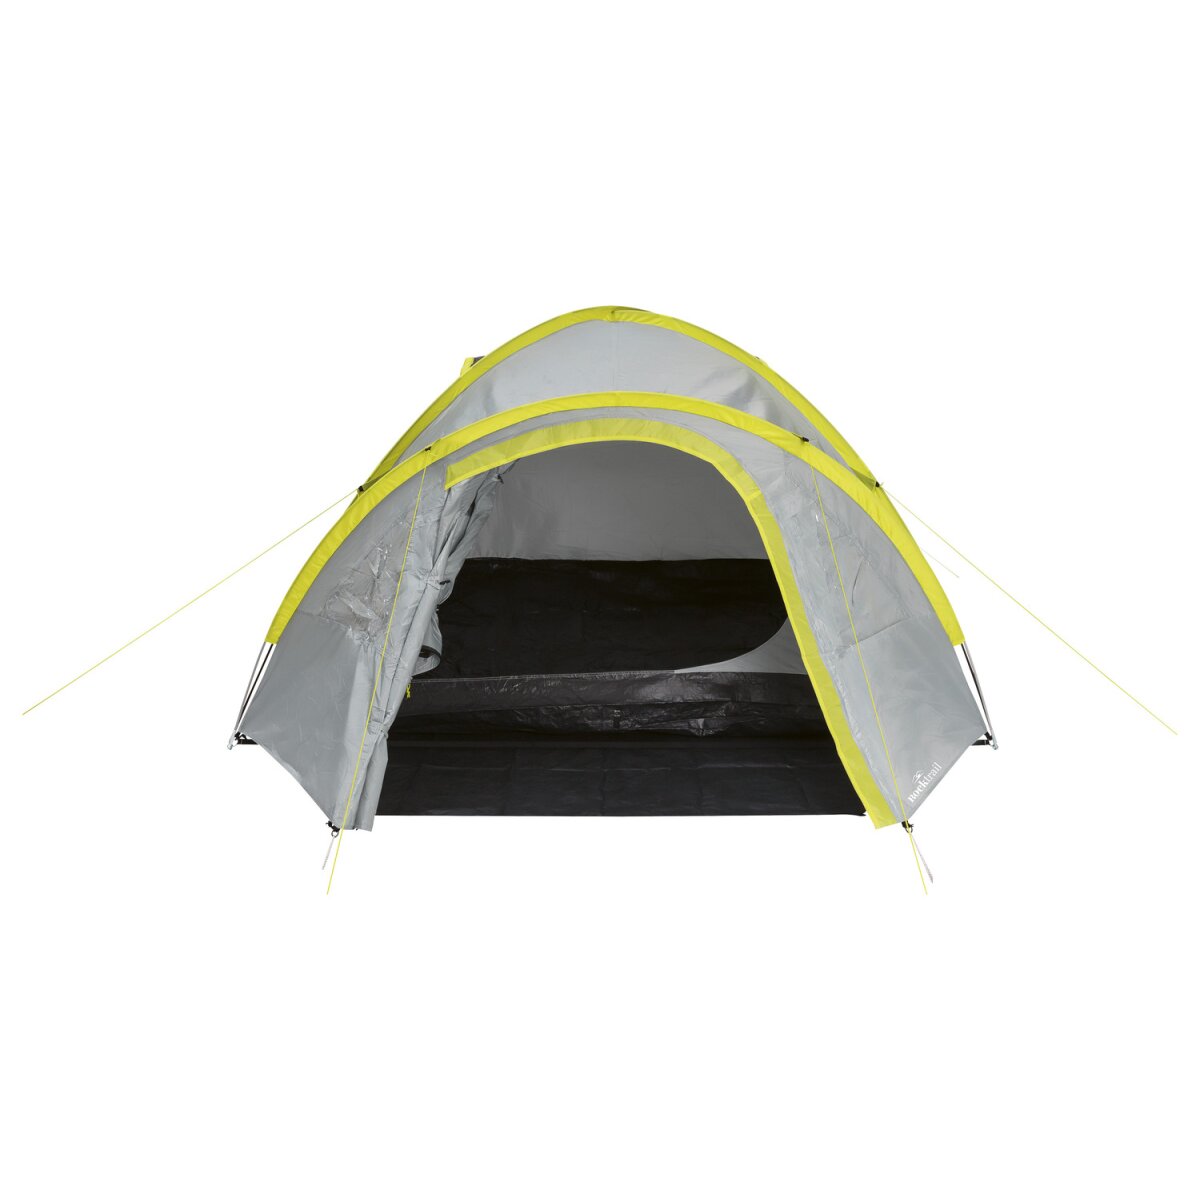 Doppeldach mit 4 B-Ware, 34,99 - € Campingzelt Rocktrail für Personen,